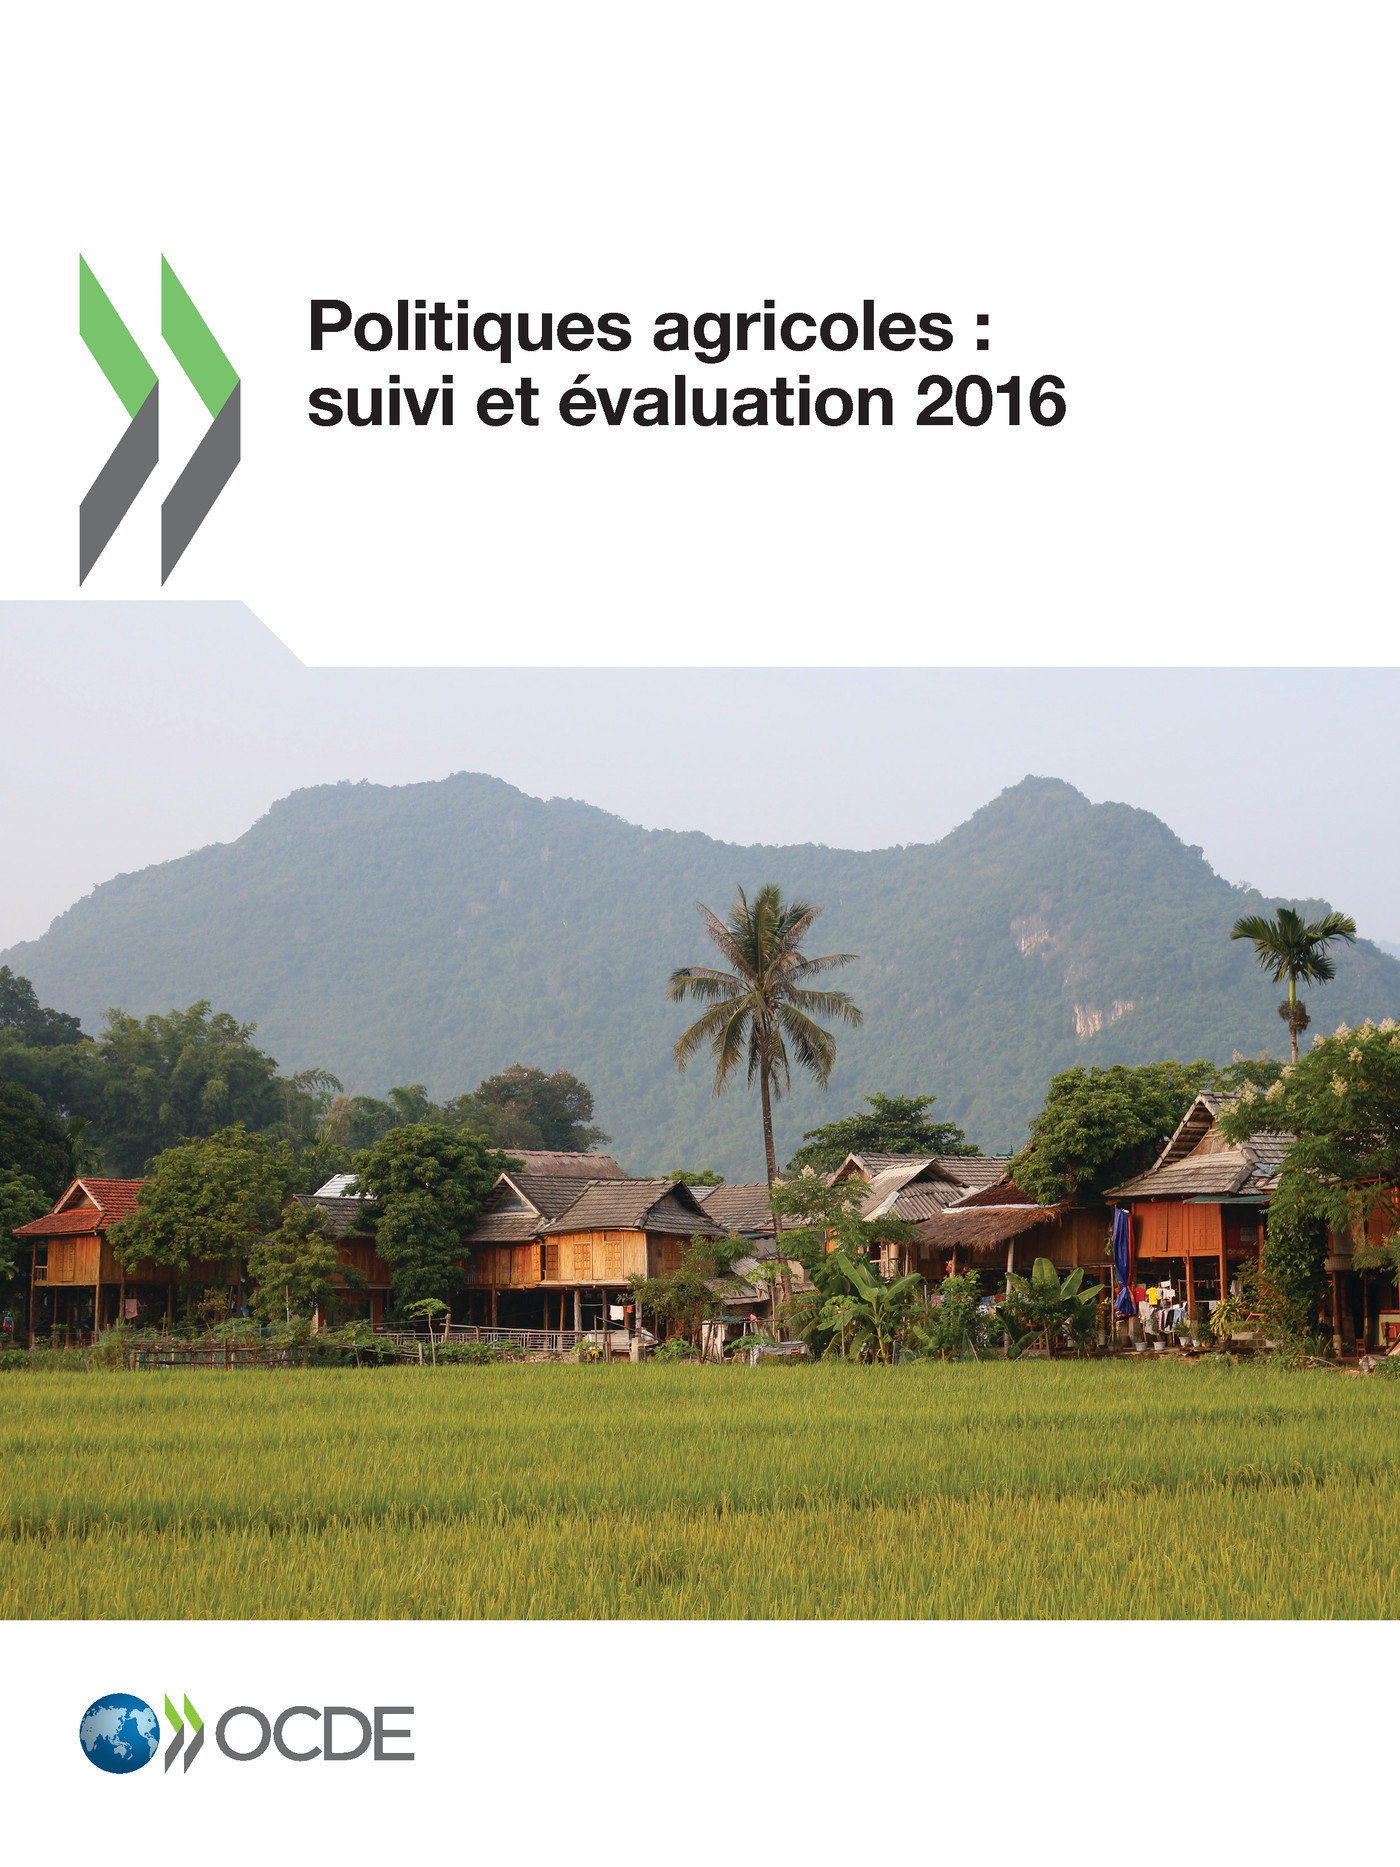 Politiques agricoles : suivi et évaluation 2016 -  Collectif - OCDE / OECD